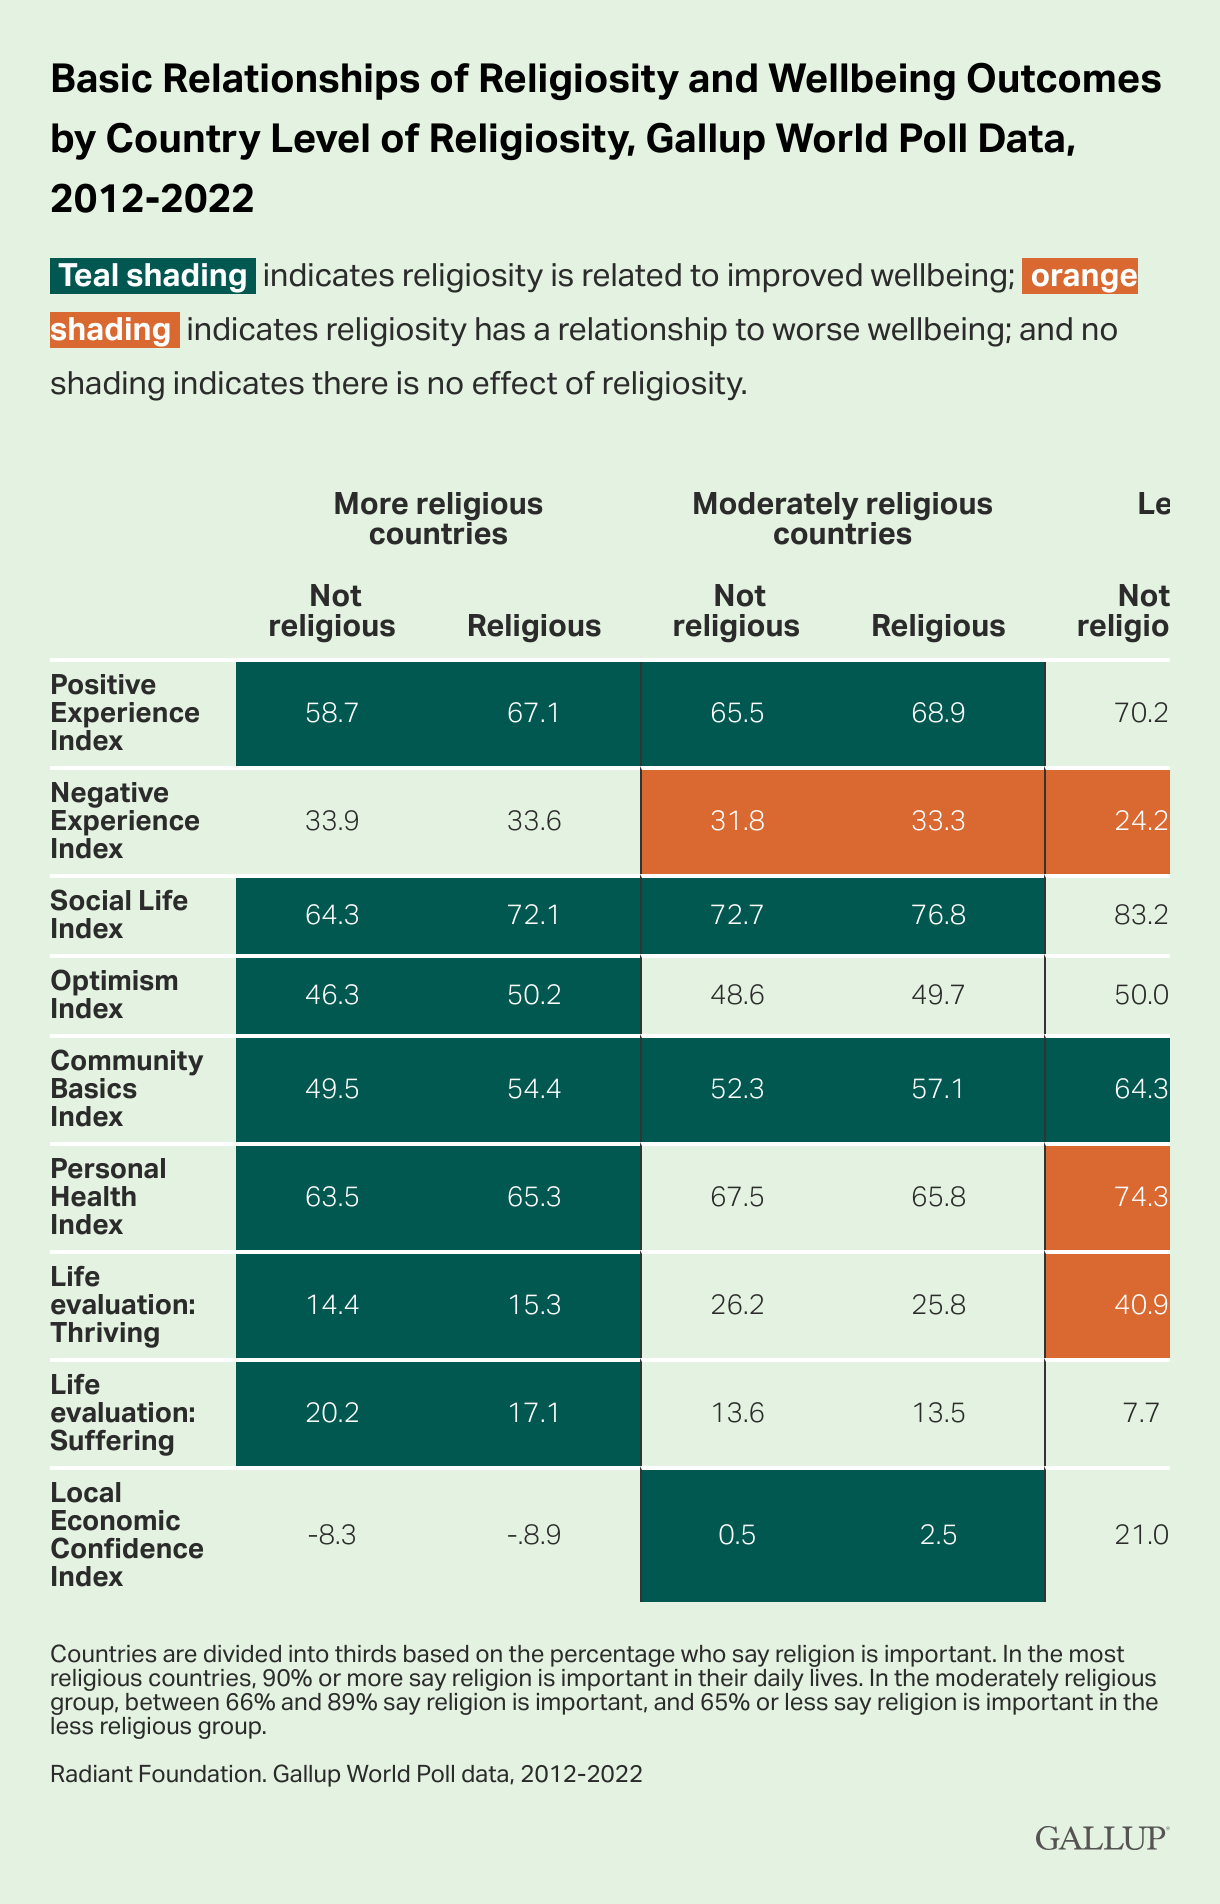 Basic Relationship of Religiosity Poll Data